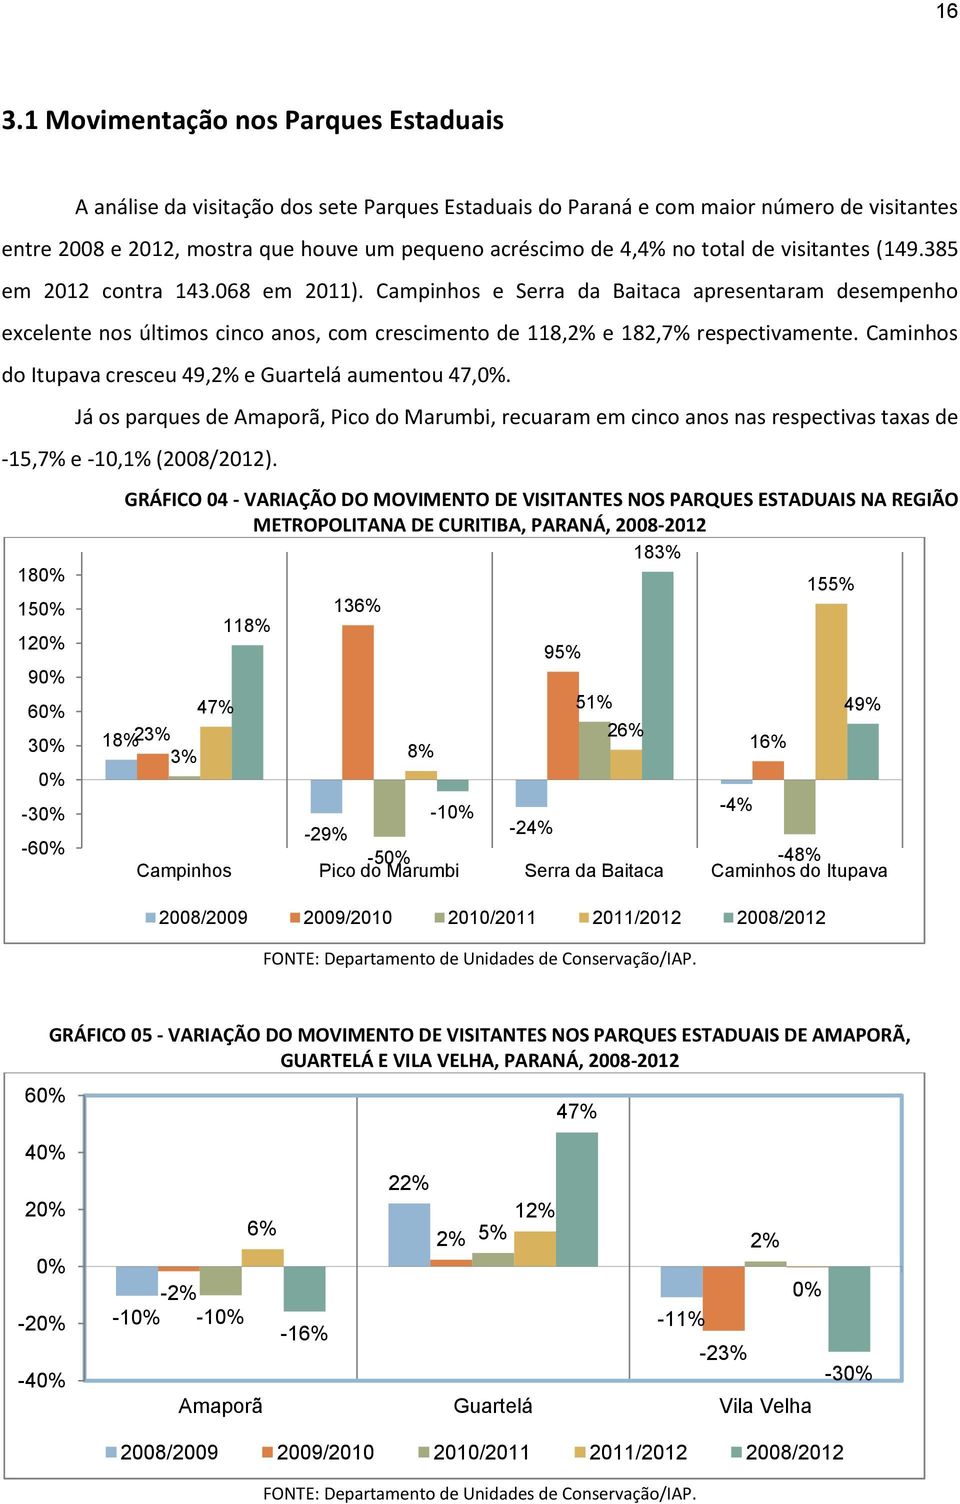 Campinhos e Serra da Baitaca apresentaram desempenho excelente nos últimos cinco anos, com crescimento de 118,2% e 182,7% respectivamente. Caminhos do Itupava cresceu 49,2% e Guartelá aumentou 47,0%.